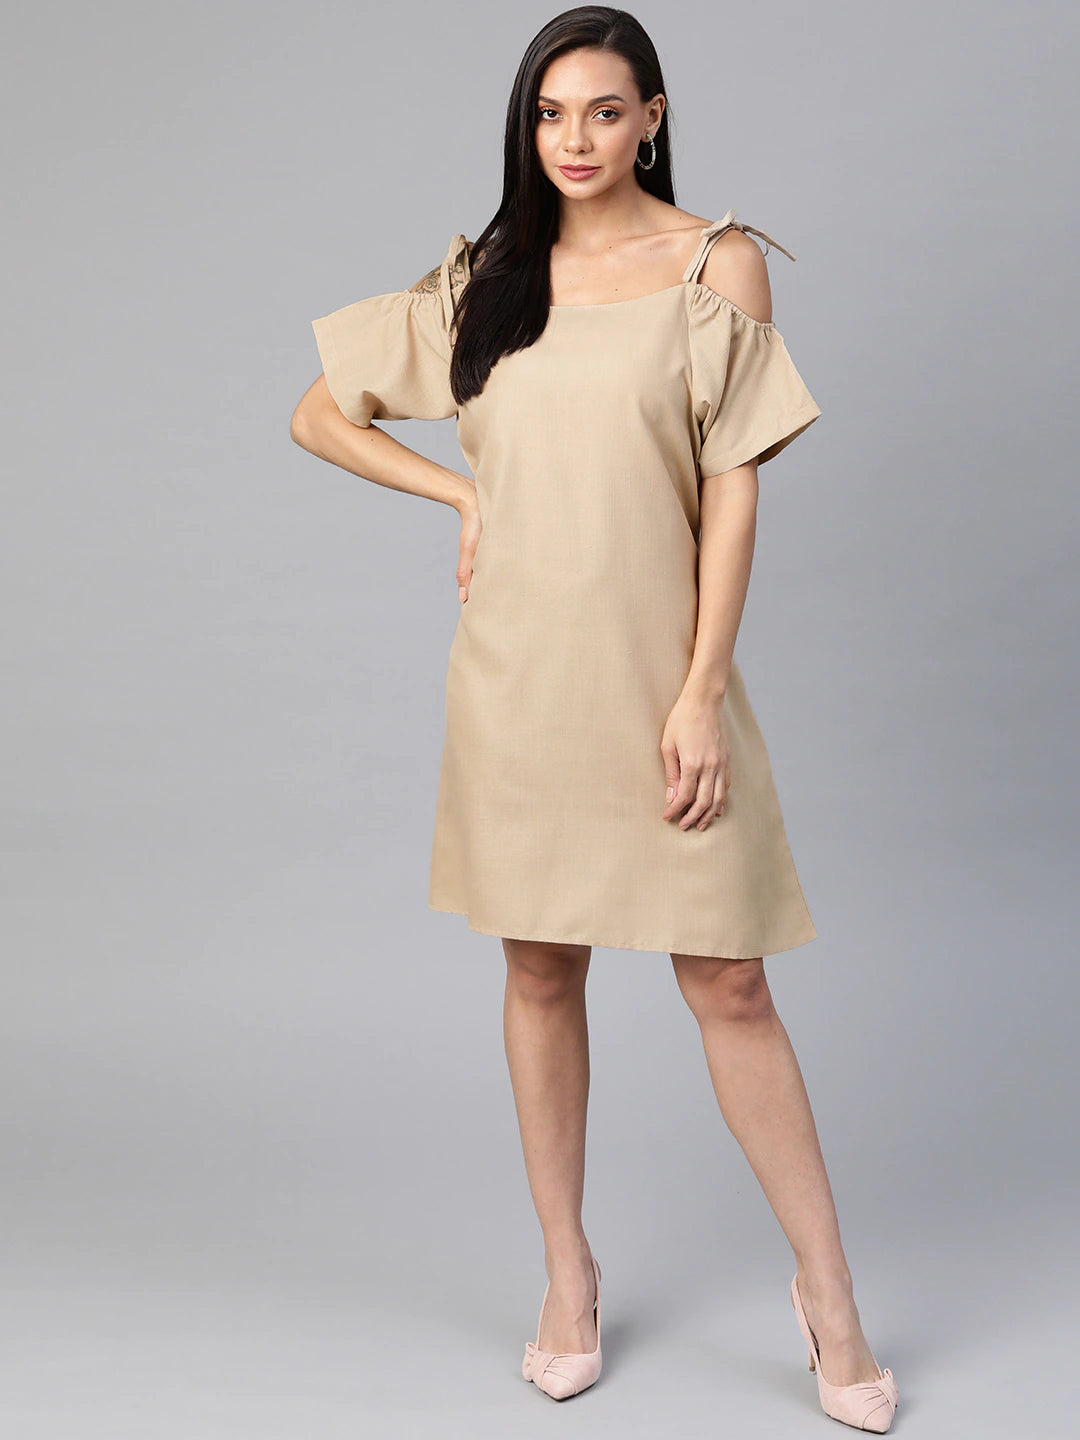 Cottinfab Beige Solid Pure Cotton A-Line Dress